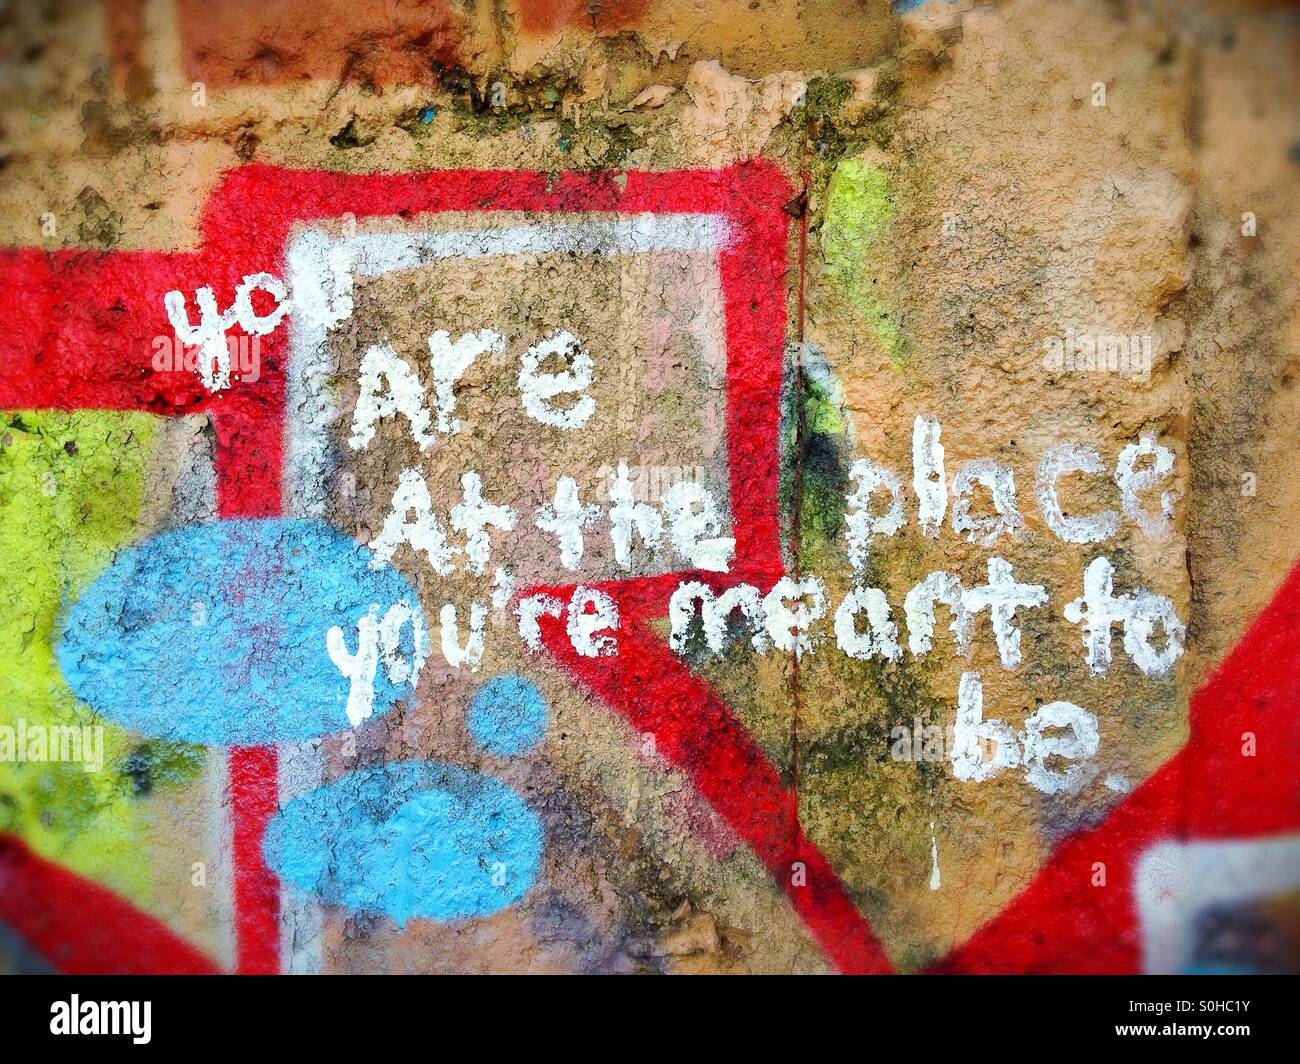 Profound graffiti message on wall. Stock Photo